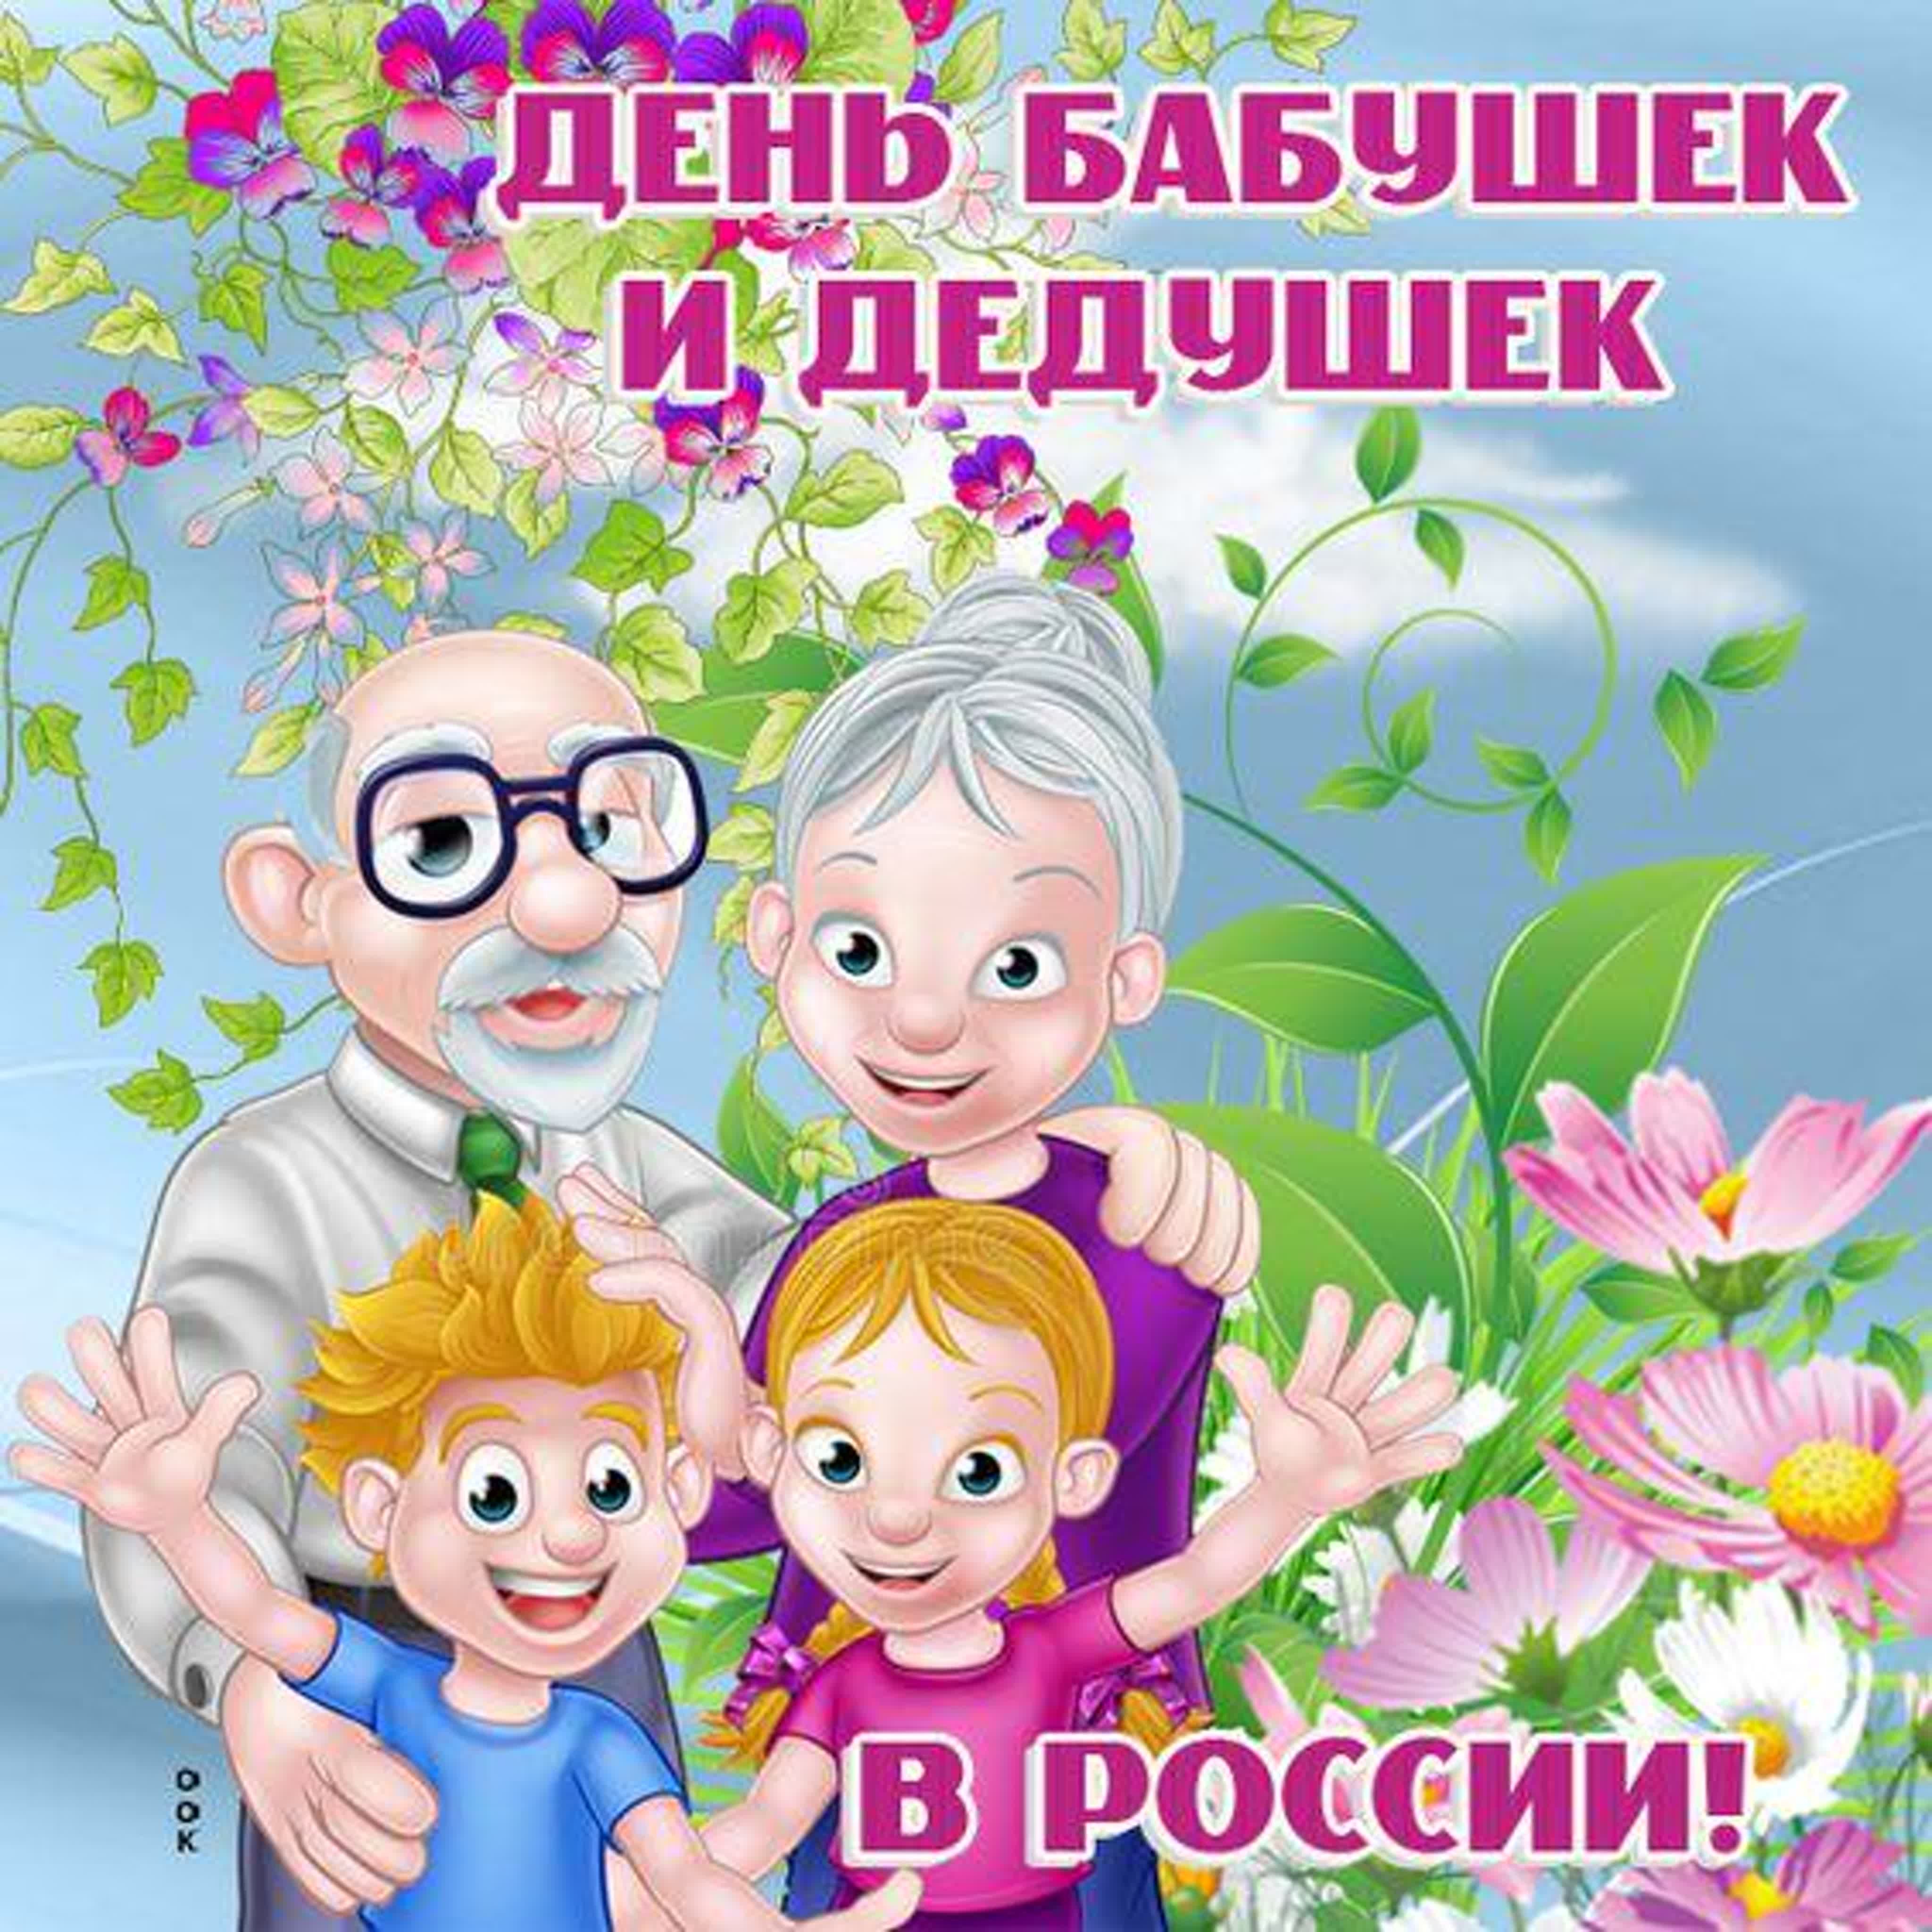 Когда день бабушек в беларуси. С днём бабушек и дедушек. С праздником бабушек и дедушек. 28 Октября – день бабушек и дедуше. Поздравить с днем бабушек и дедушек.